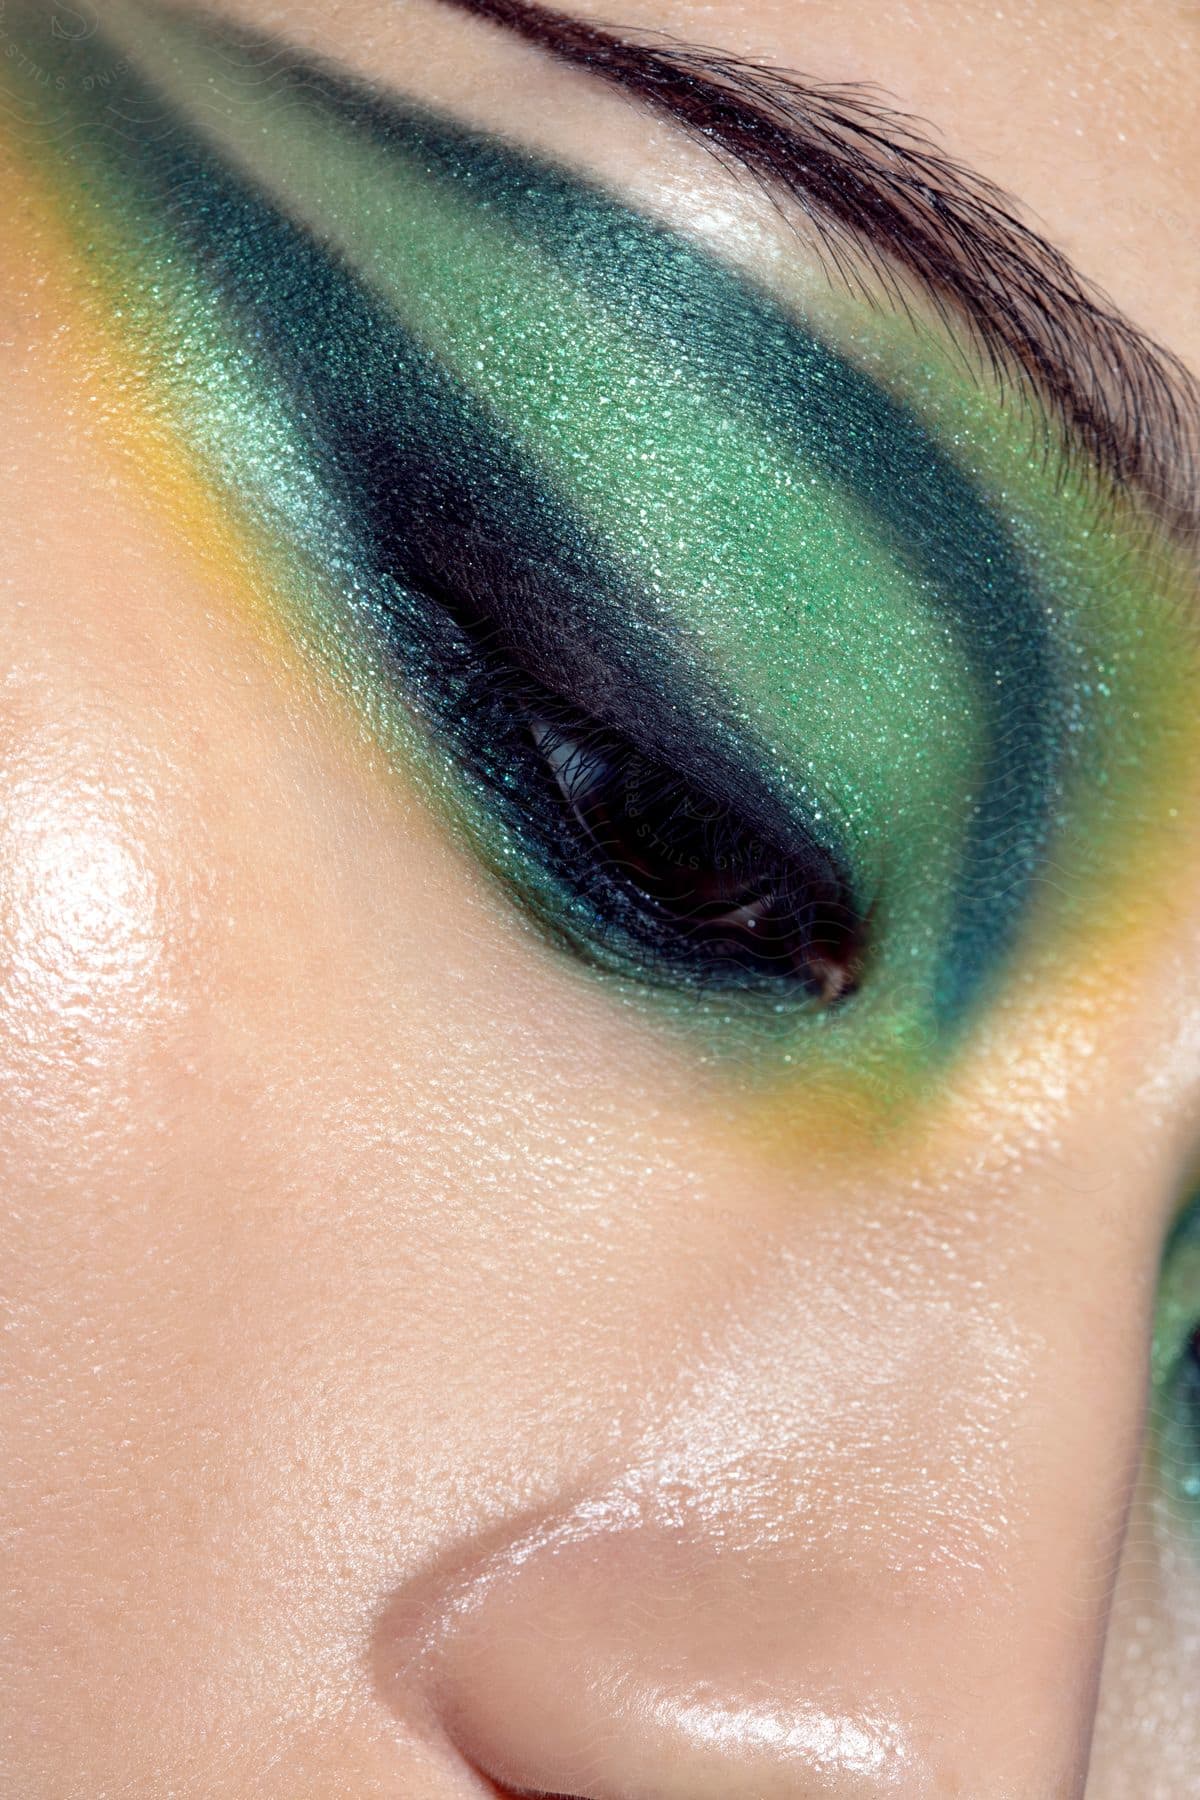 Woman wearing shiny green eyeshadow across her eyelid